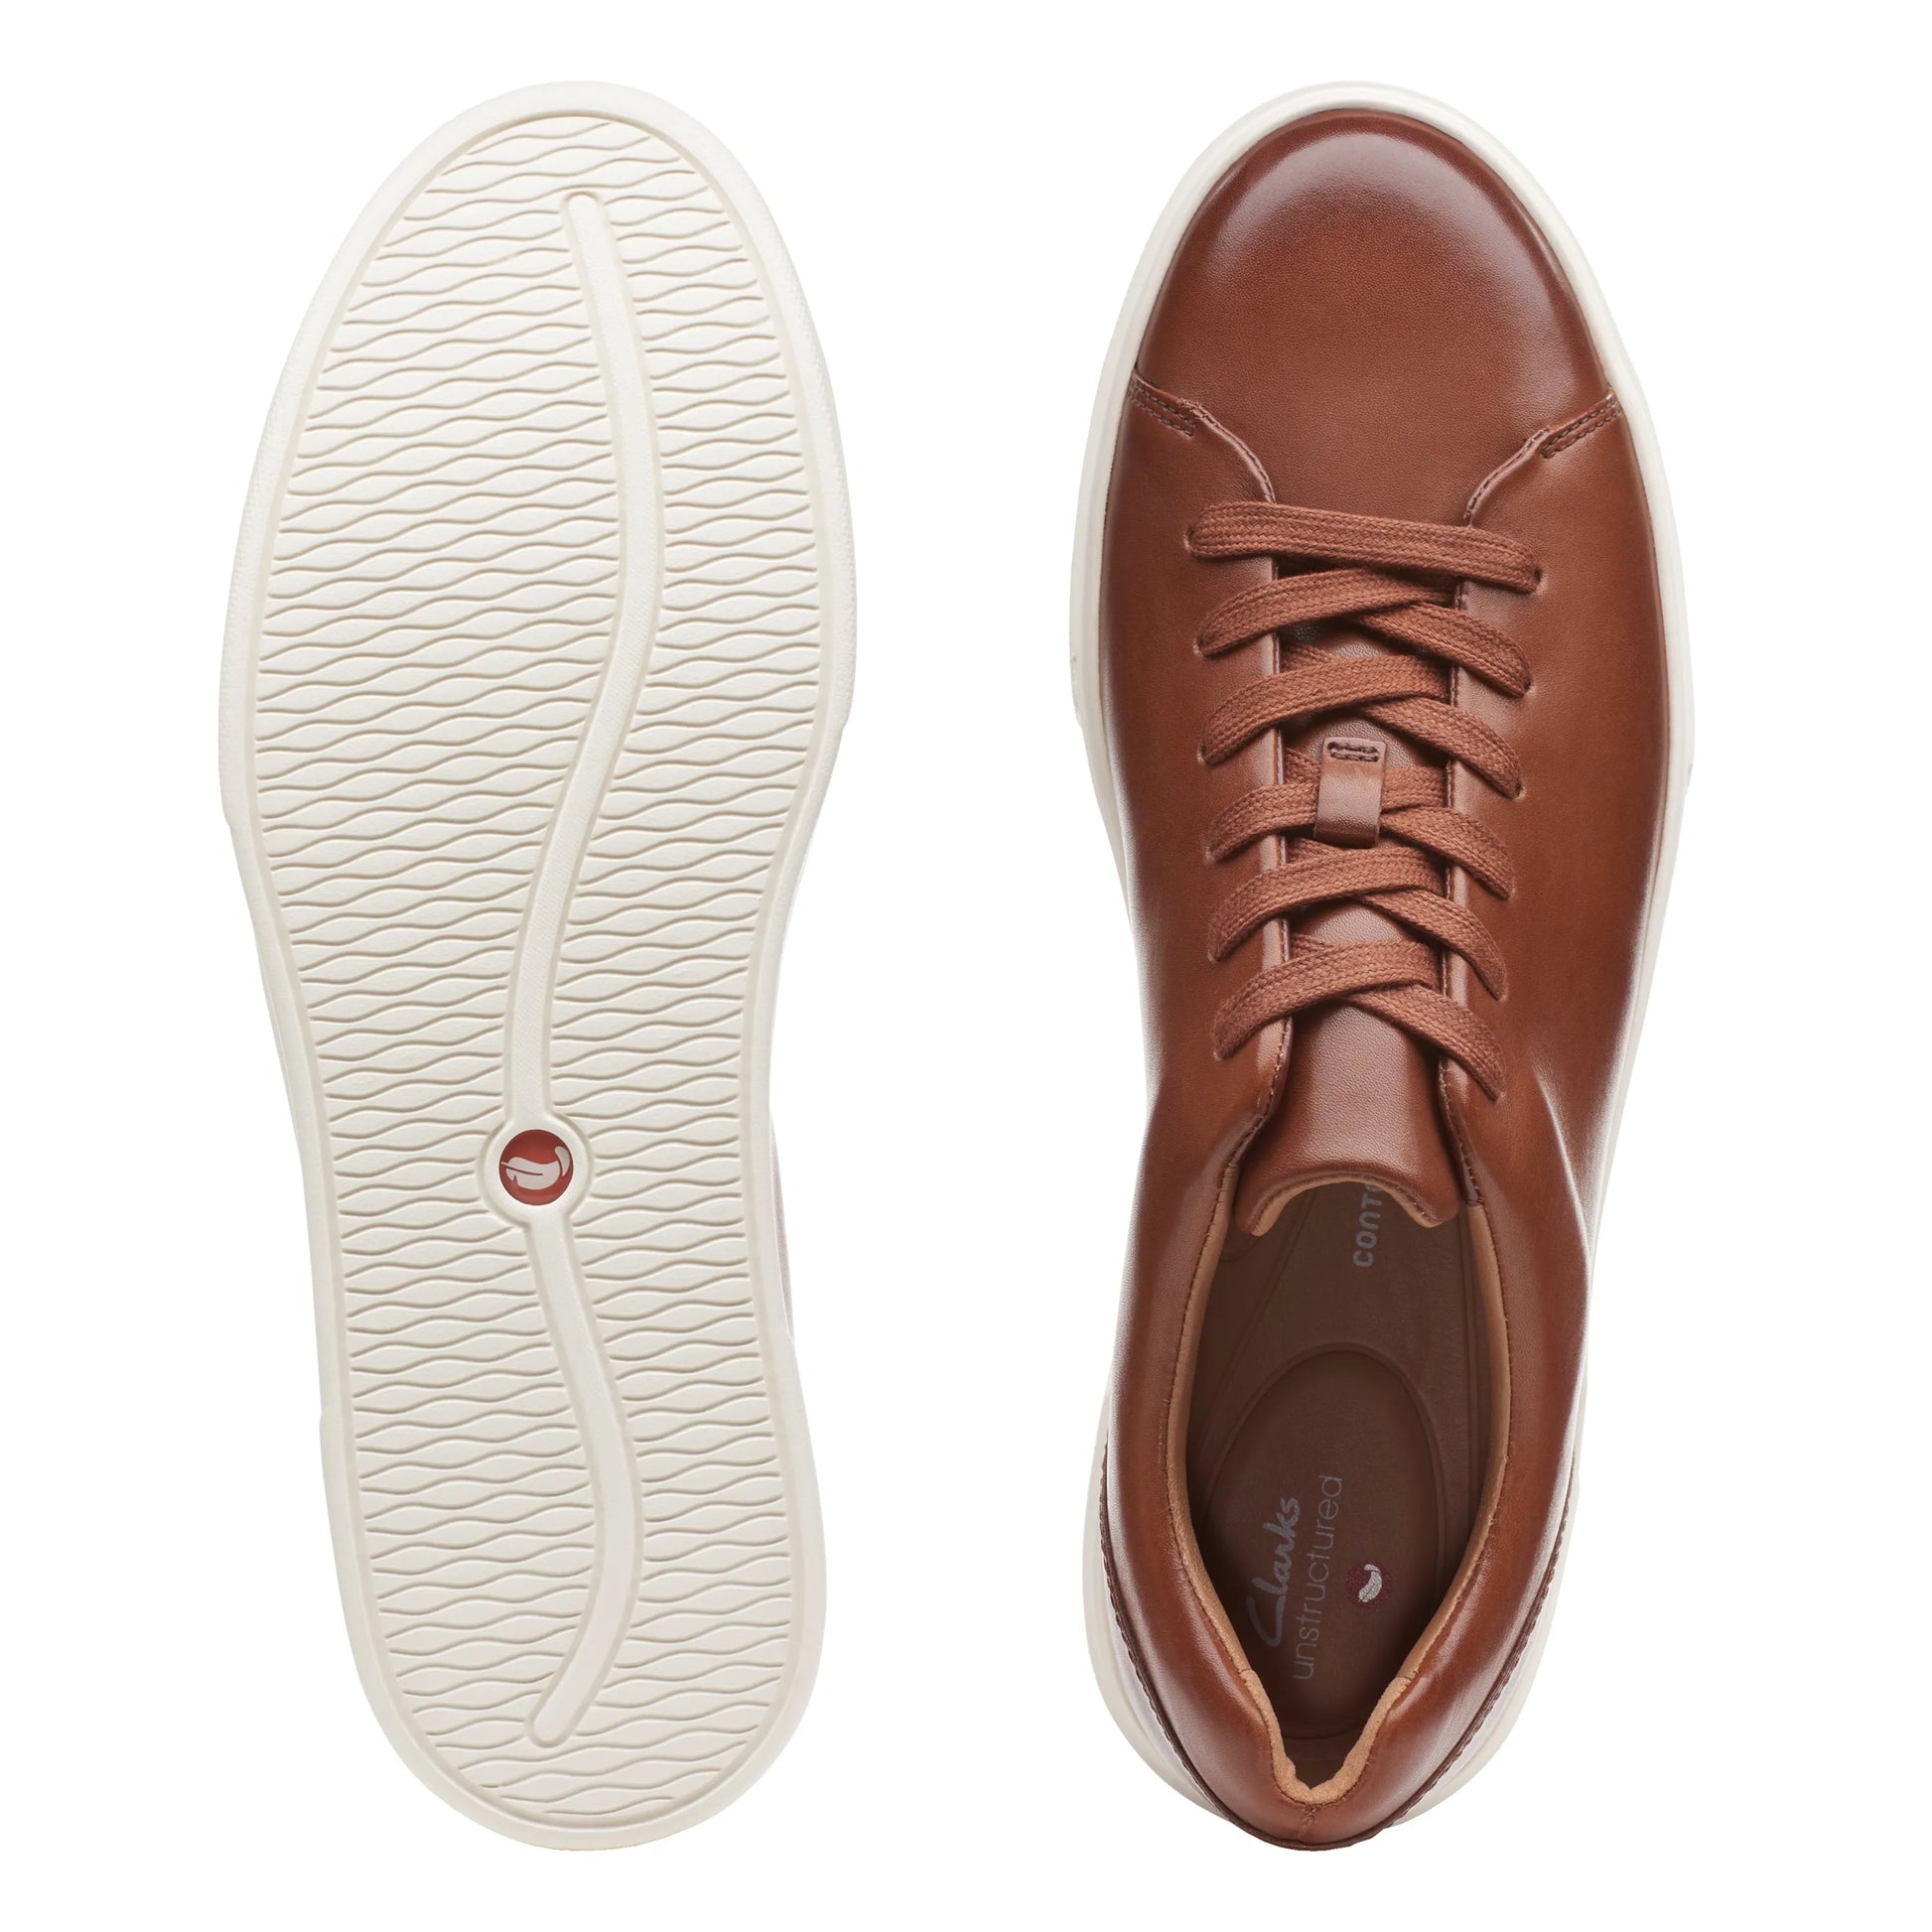 Sneakers De La Marca Clarks Para Hombre Modelo Un Costa Lace Color British Tan En Color Marrón